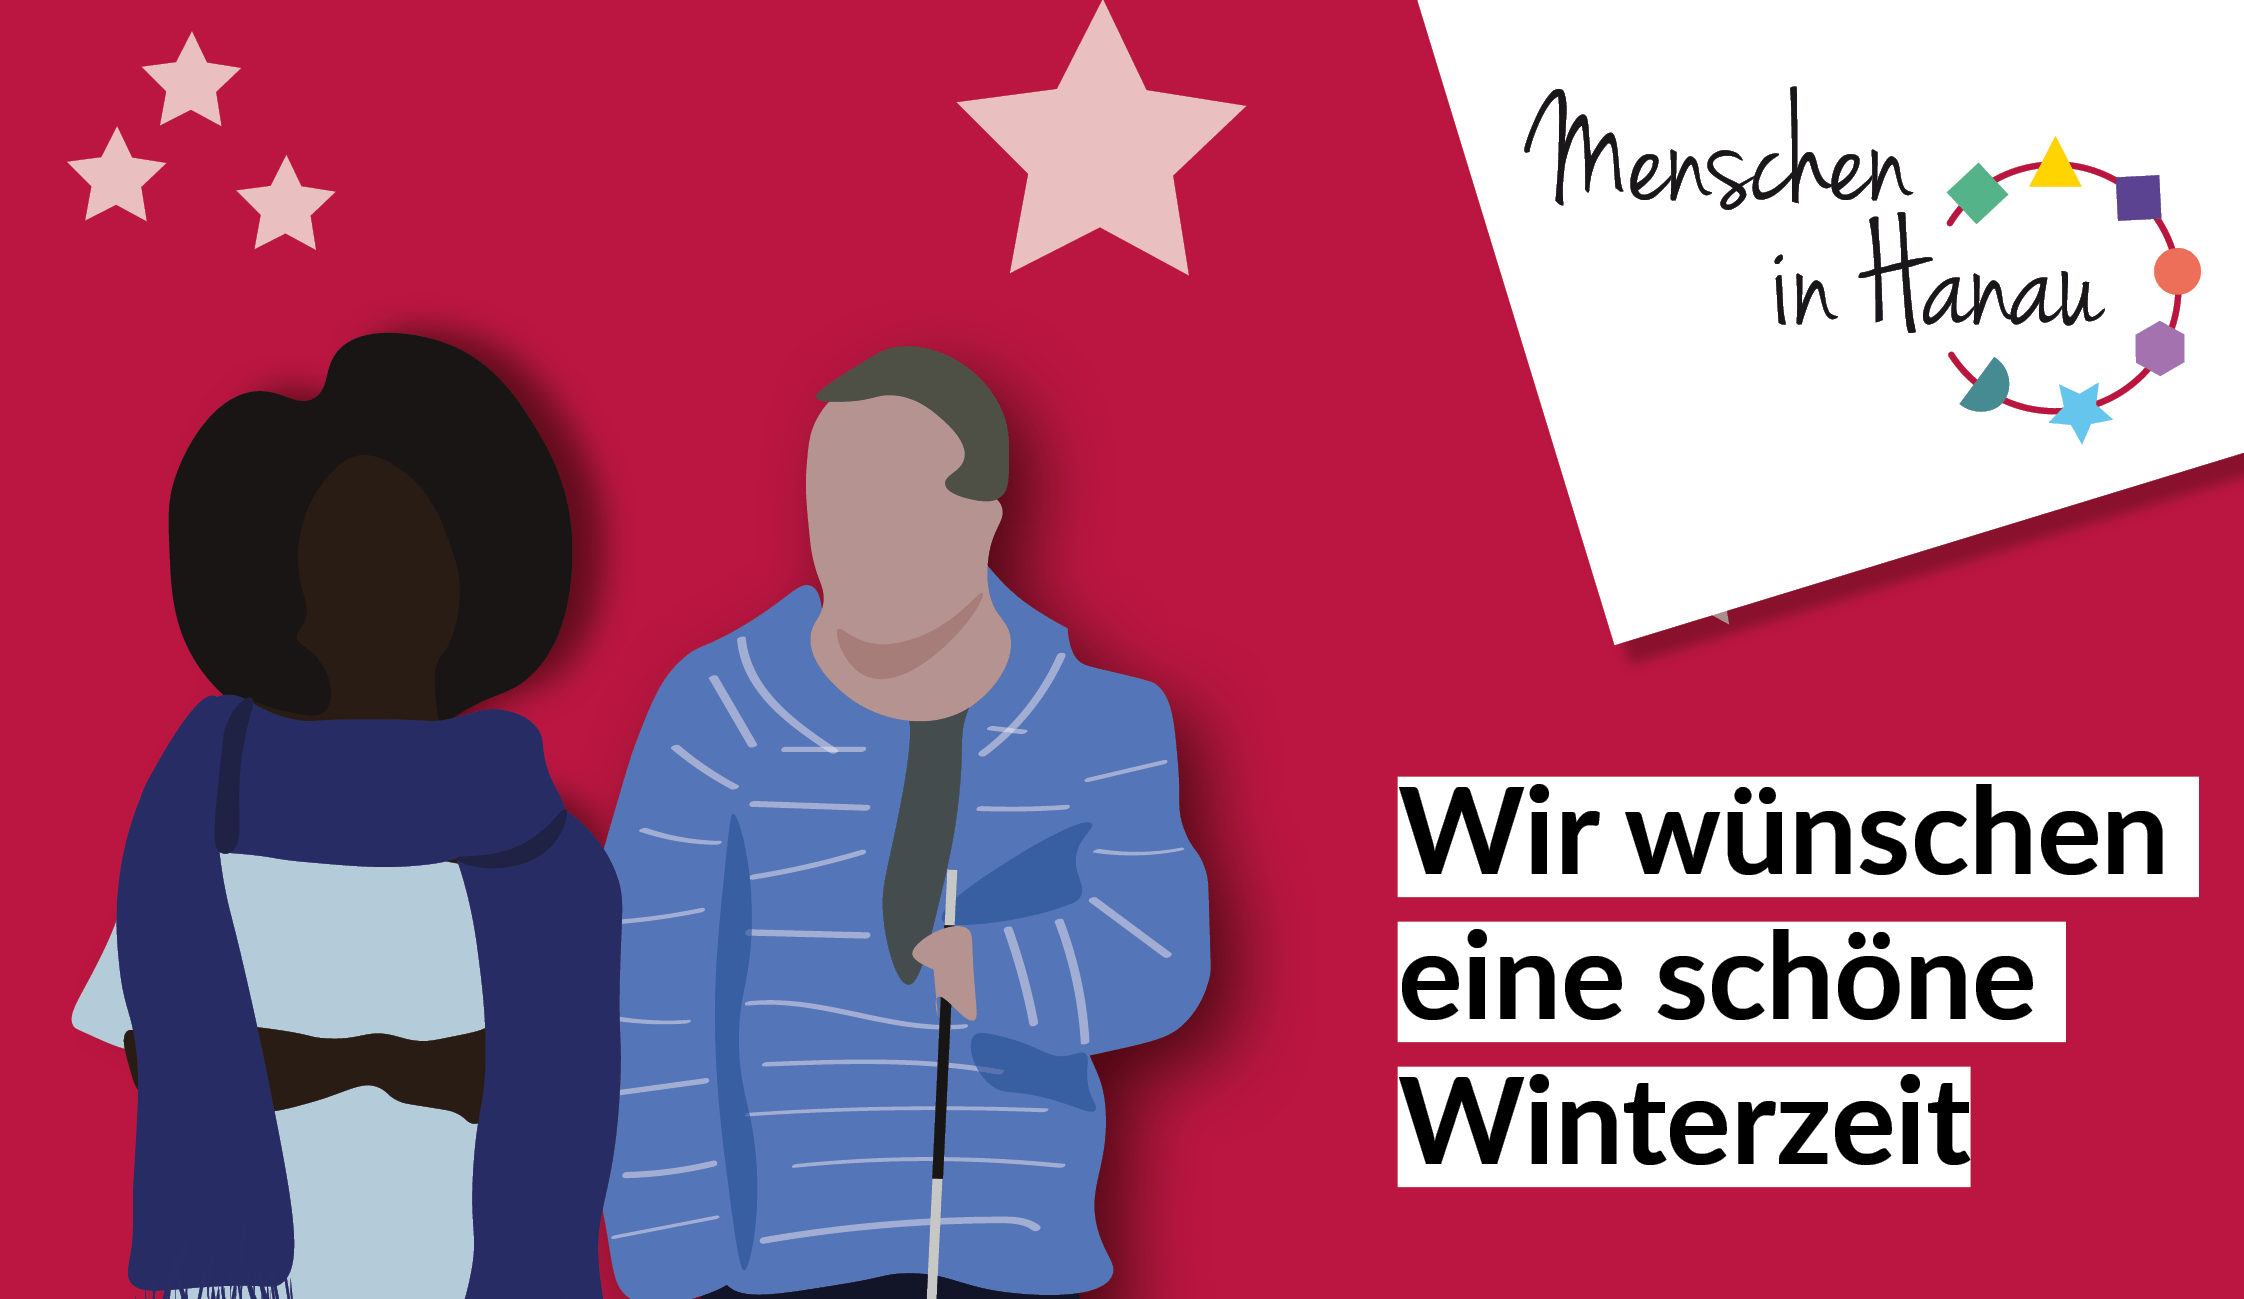 Unsere Wintergrüße. Wir wünschen eine schöne Winterzeit. Links sind zwei Menschen, eine Frau mit dunkler Hautfarbe und ein Mann mit Blindenstock als Illustration abgebildet. Der Hintergrund ist rot mit Sternen.